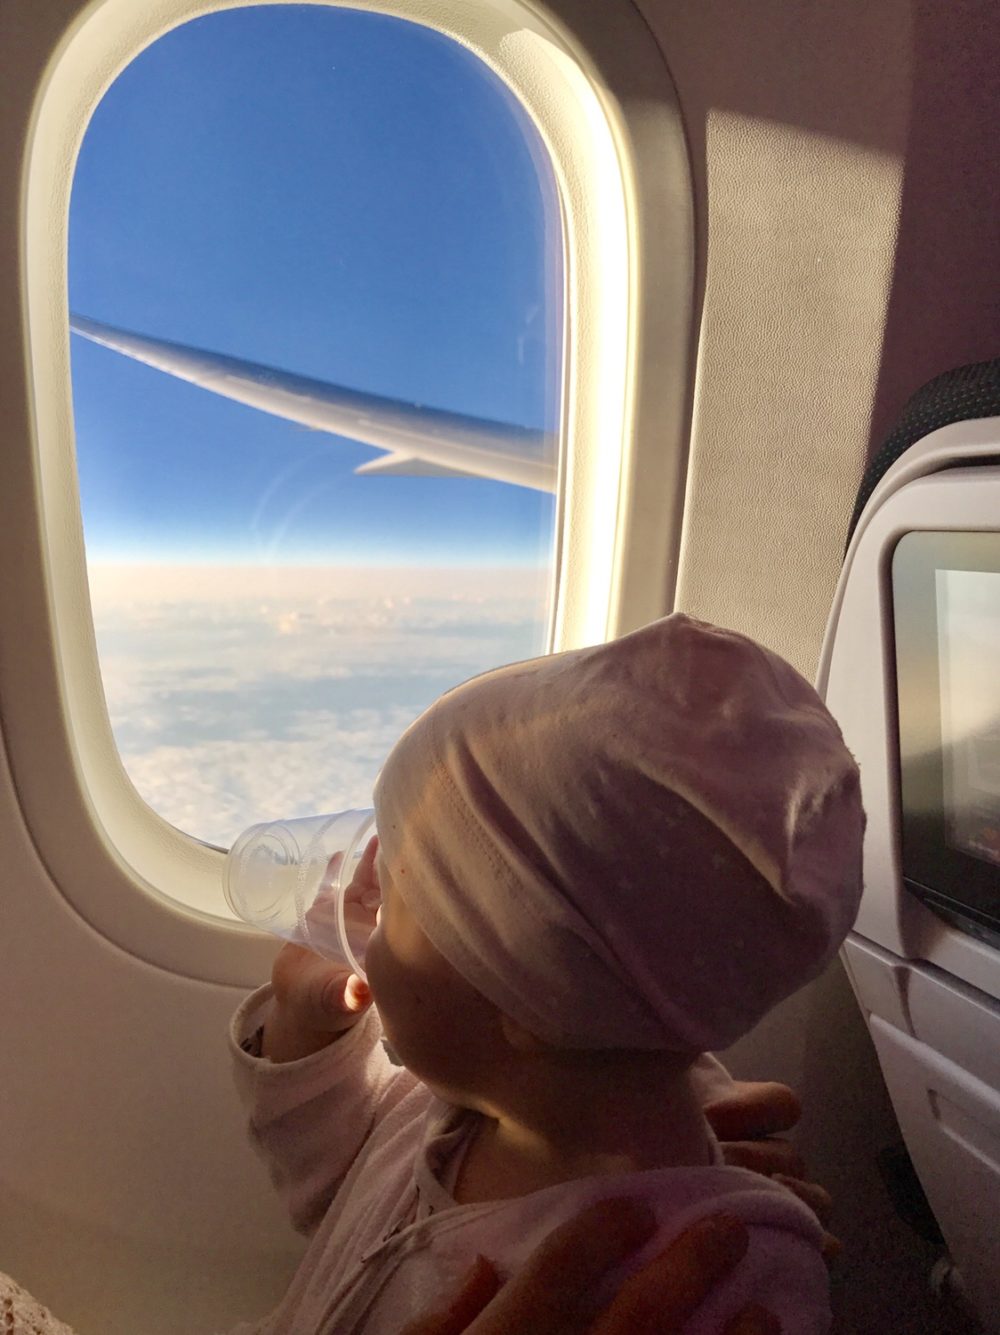 Familienreihe im Flugzeug mit Kleinkind schlechtester Platz im Flugzeug